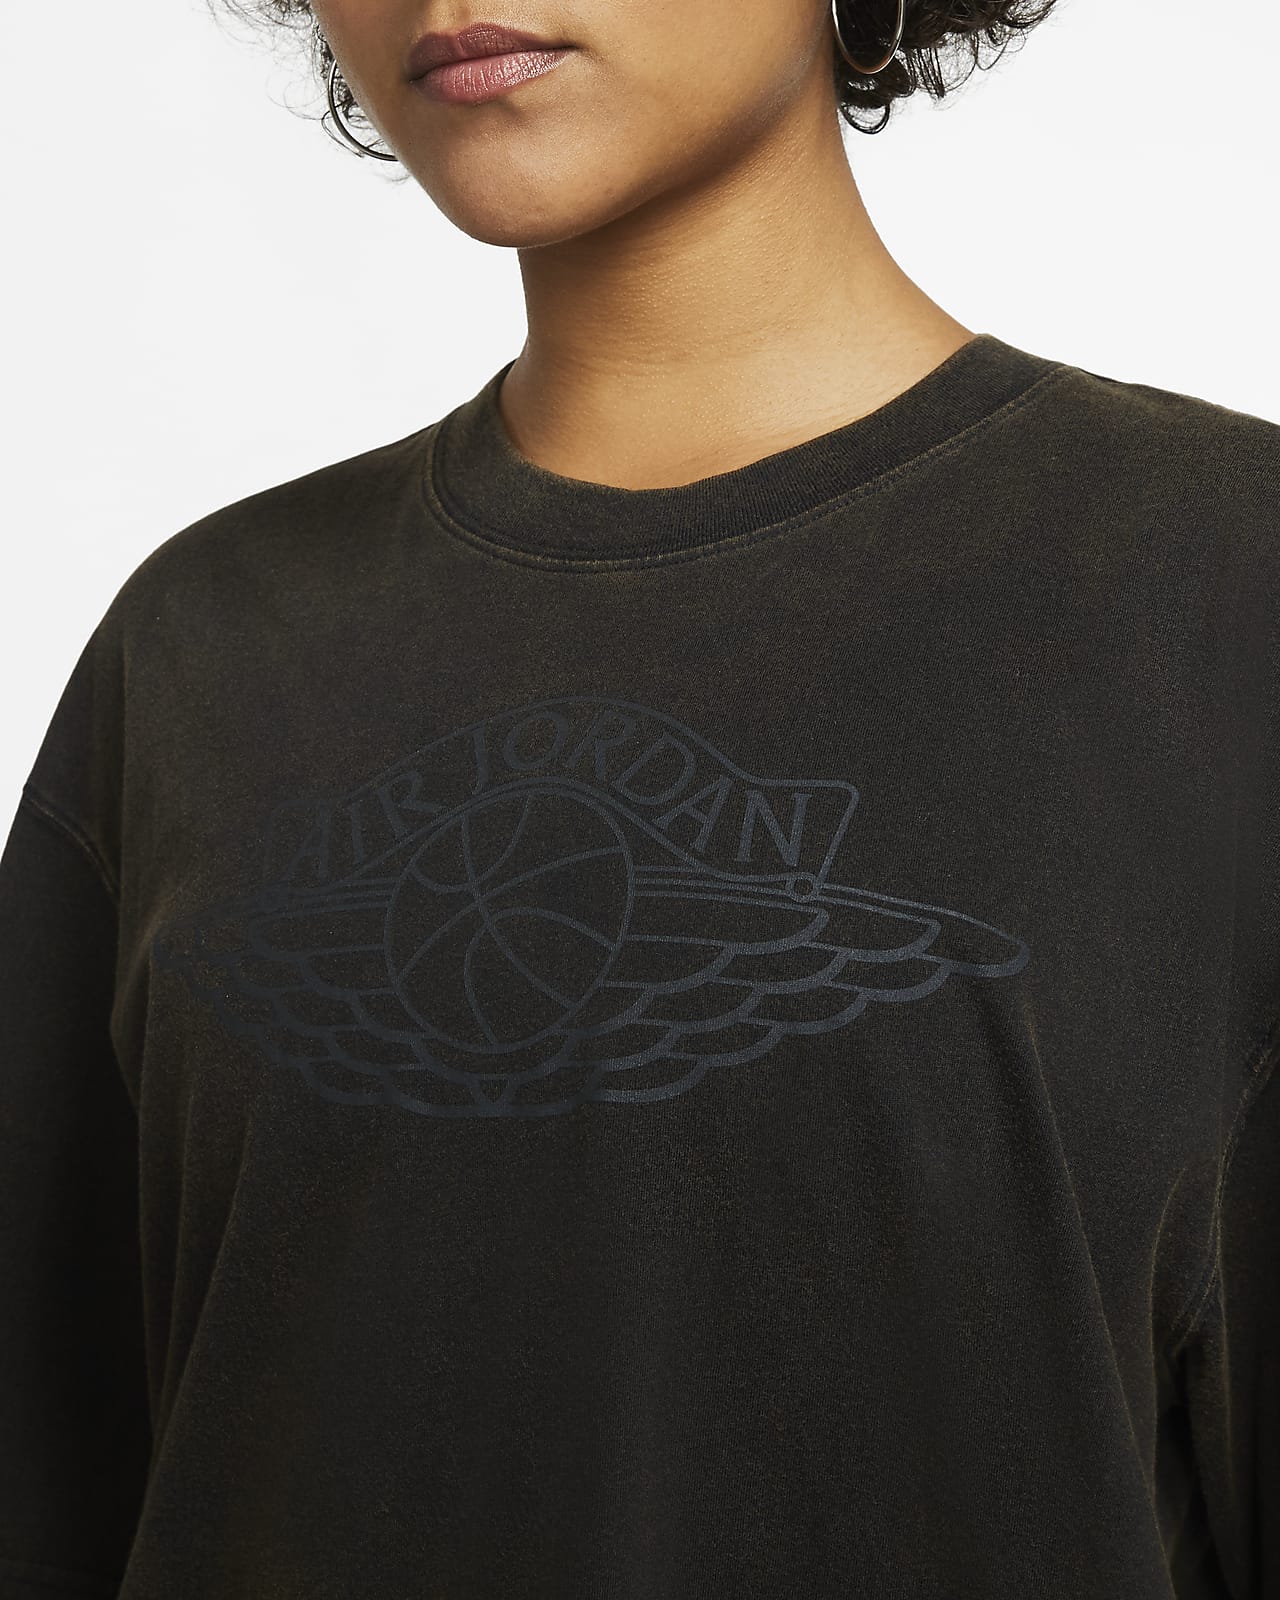 Nike公式 ジョーダン ウィメンズ Tシャツ オンラインストア 通販サイト